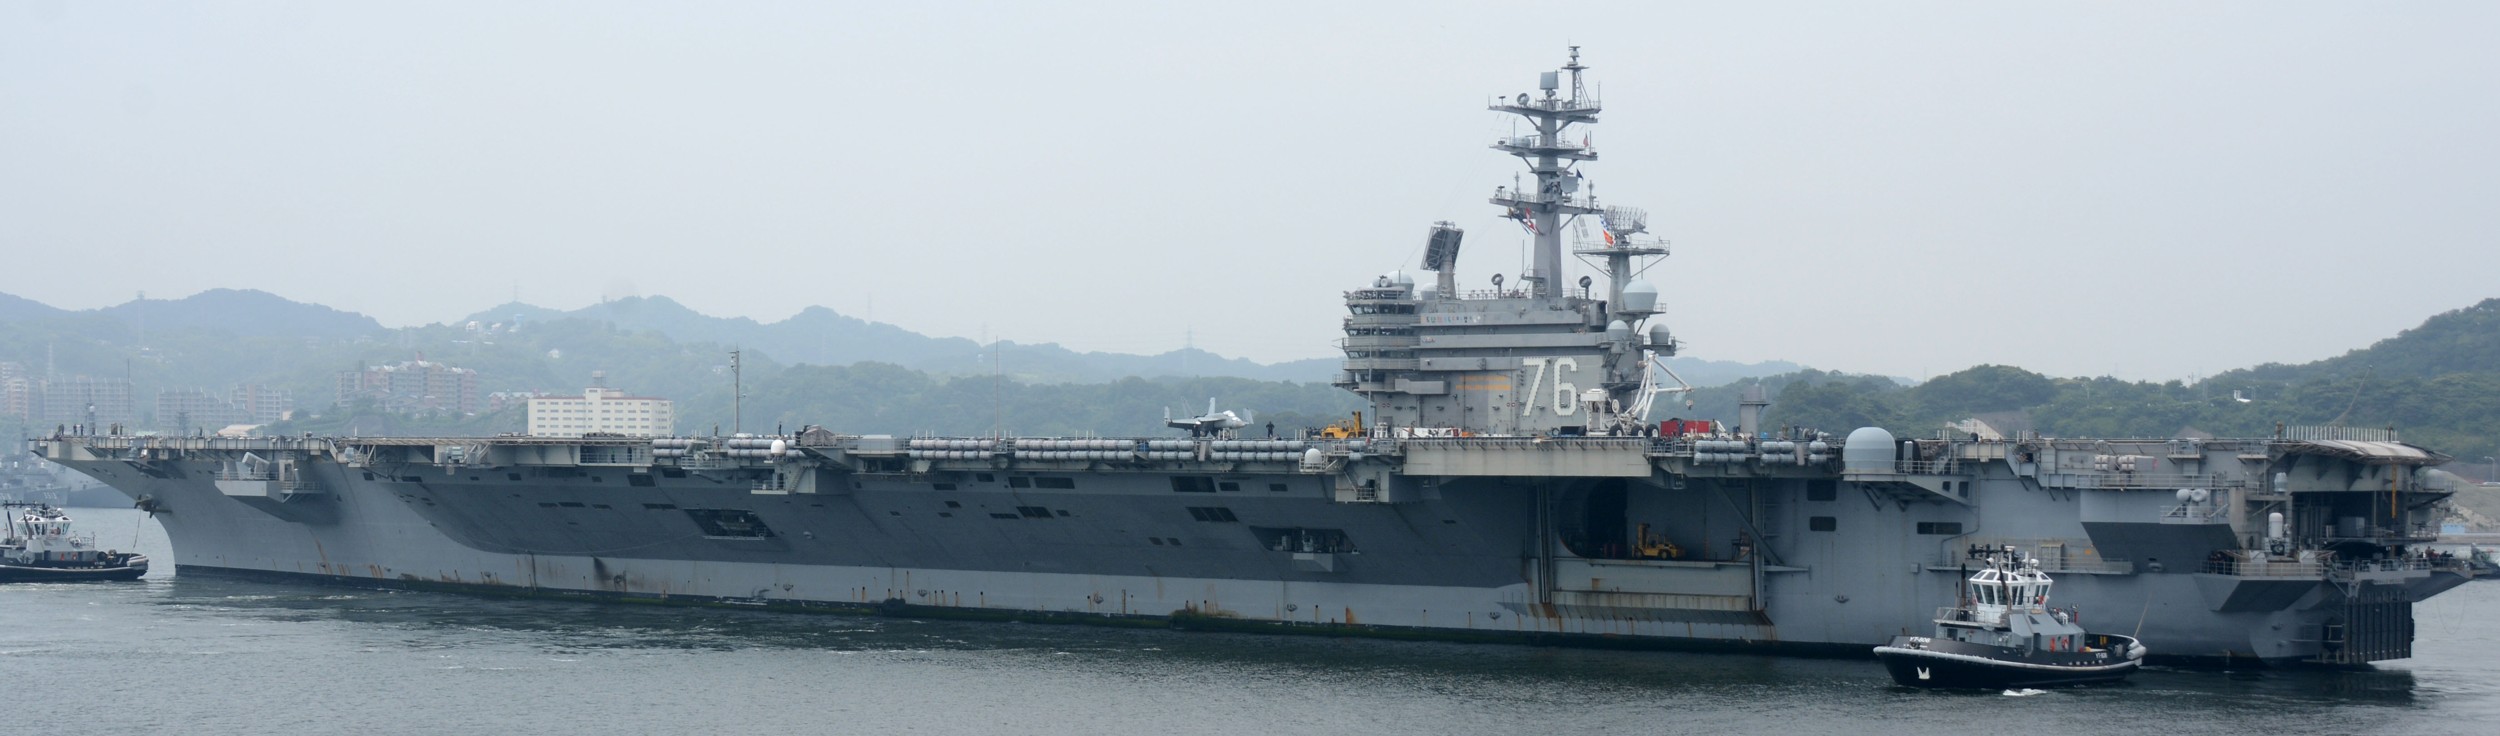 cvn-76 uss ronald reagan nimitz class aircraft carrier return yokosuka 115